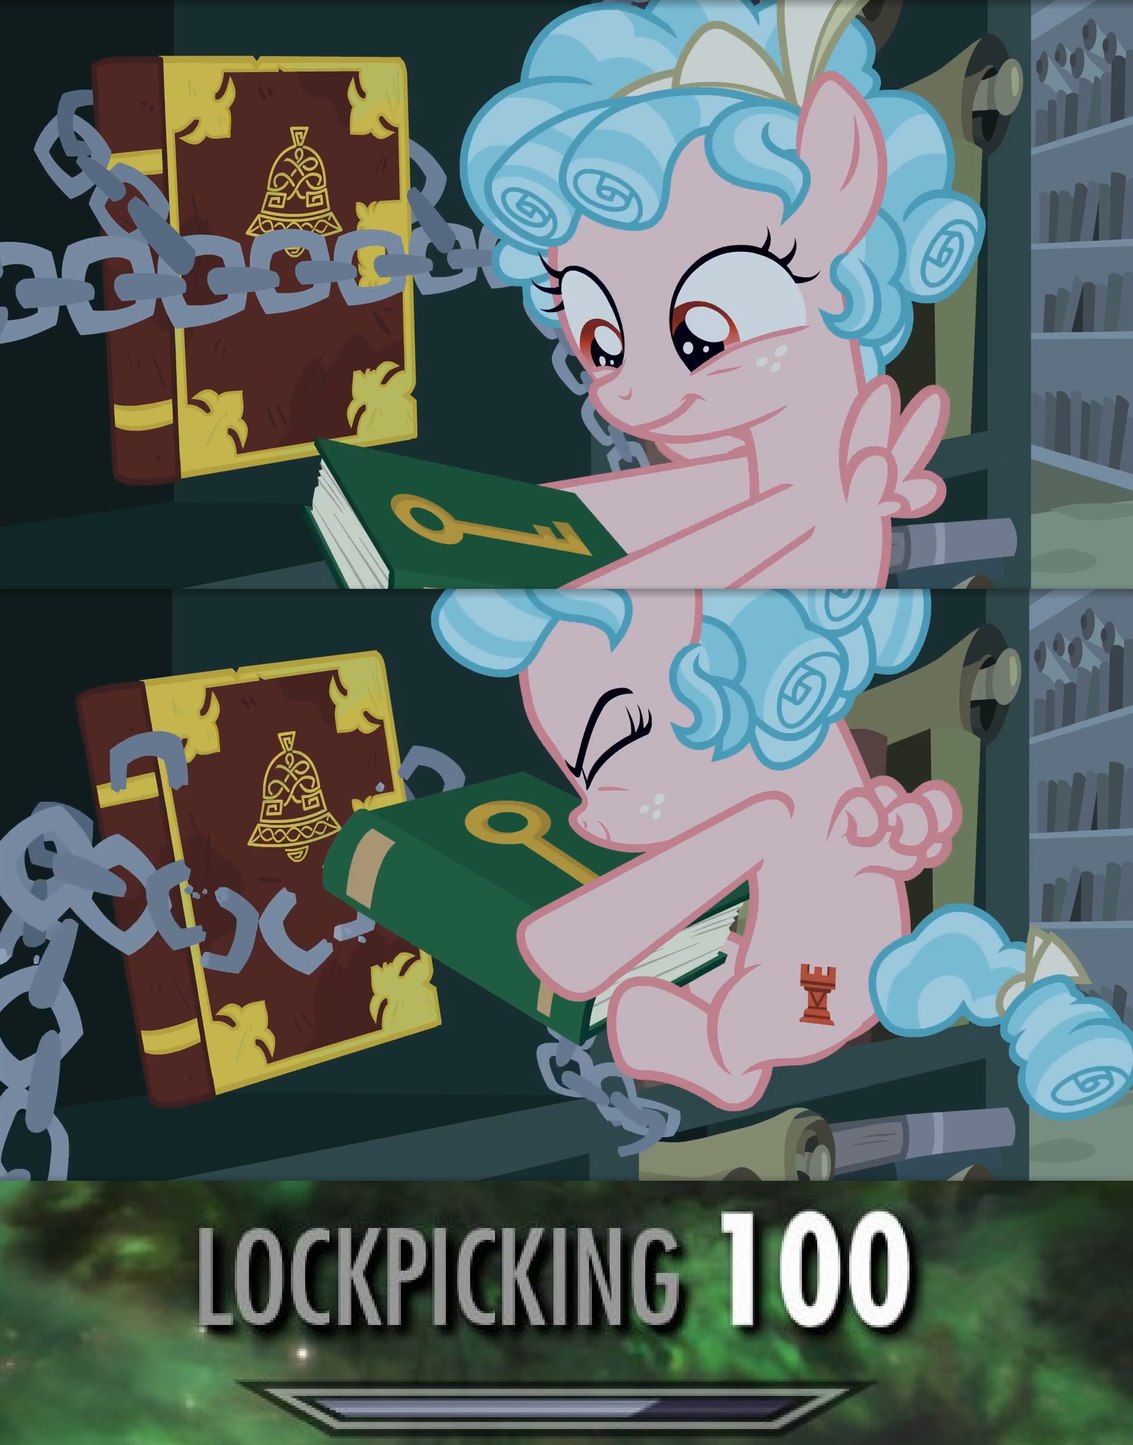 Lockpicking 100 - meme